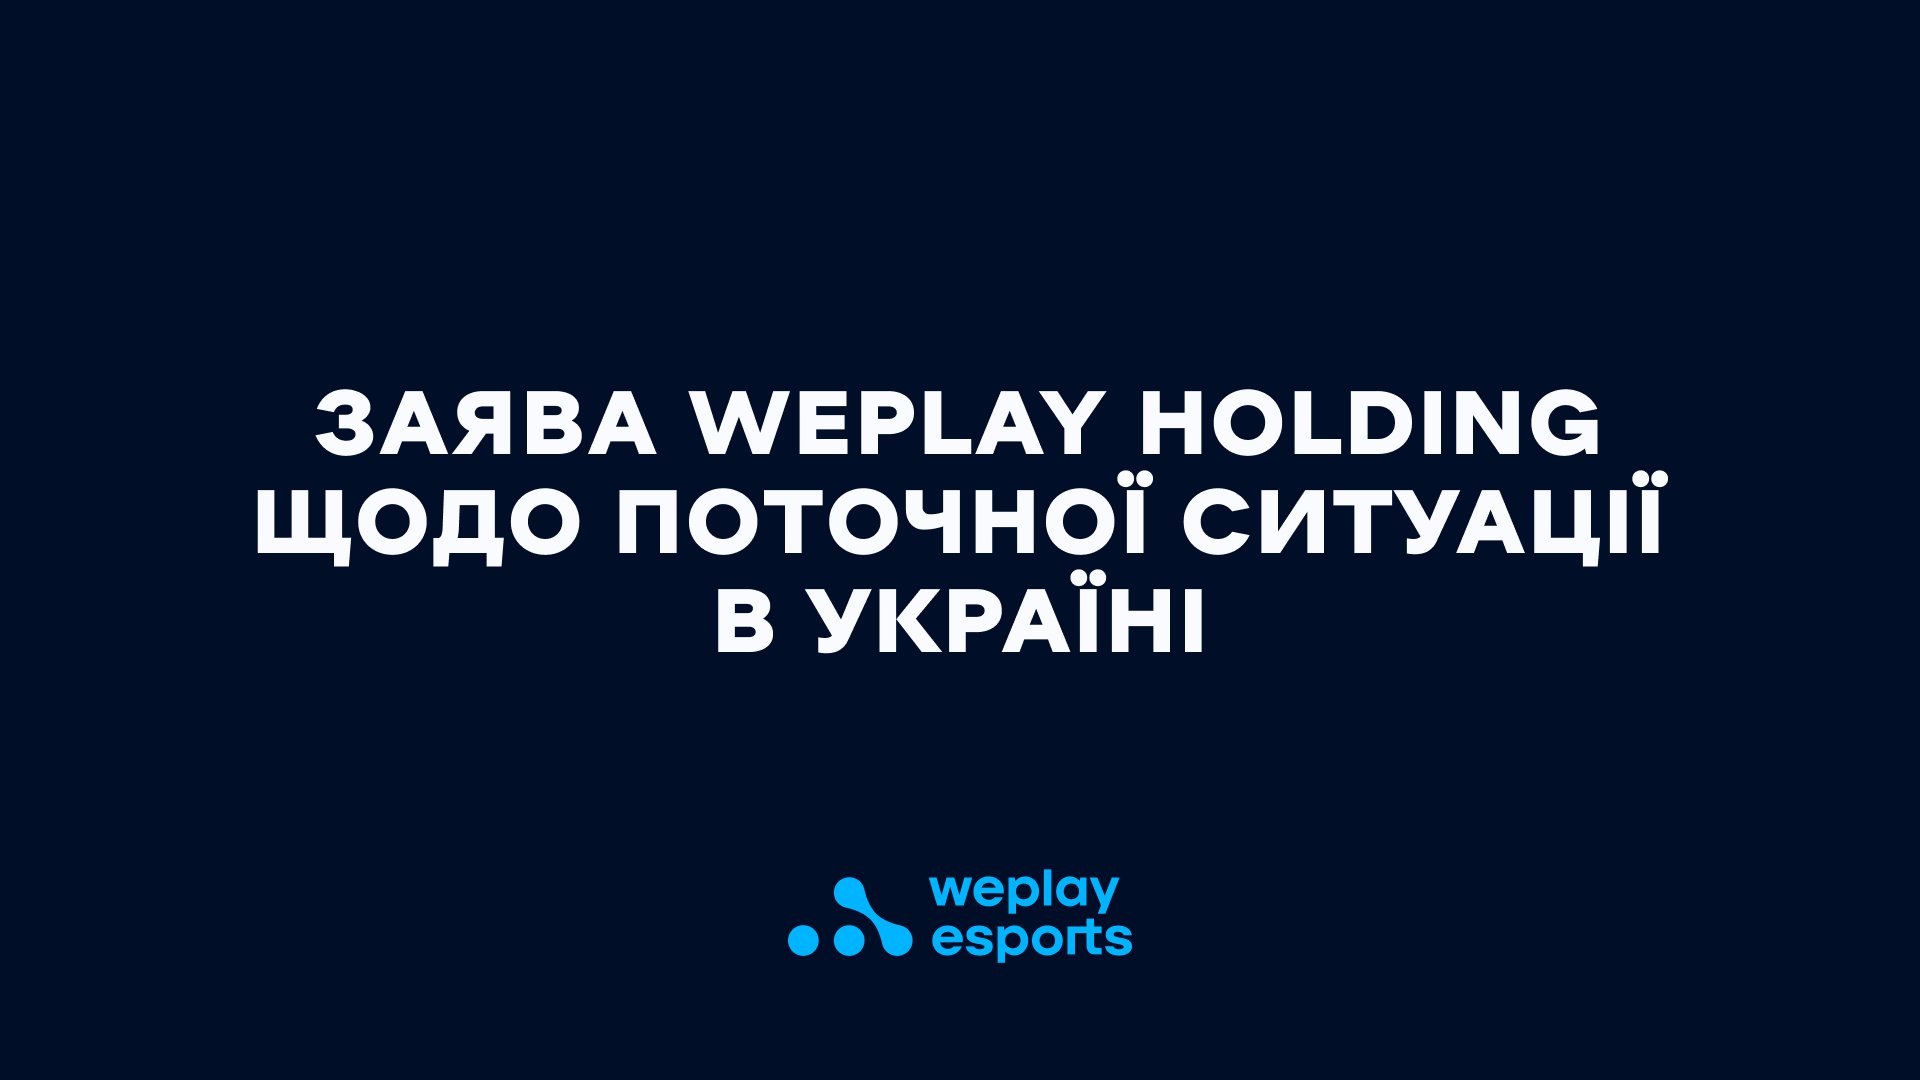 Повідомлення про WePlay Academy League. Зображення: WePlay Holding